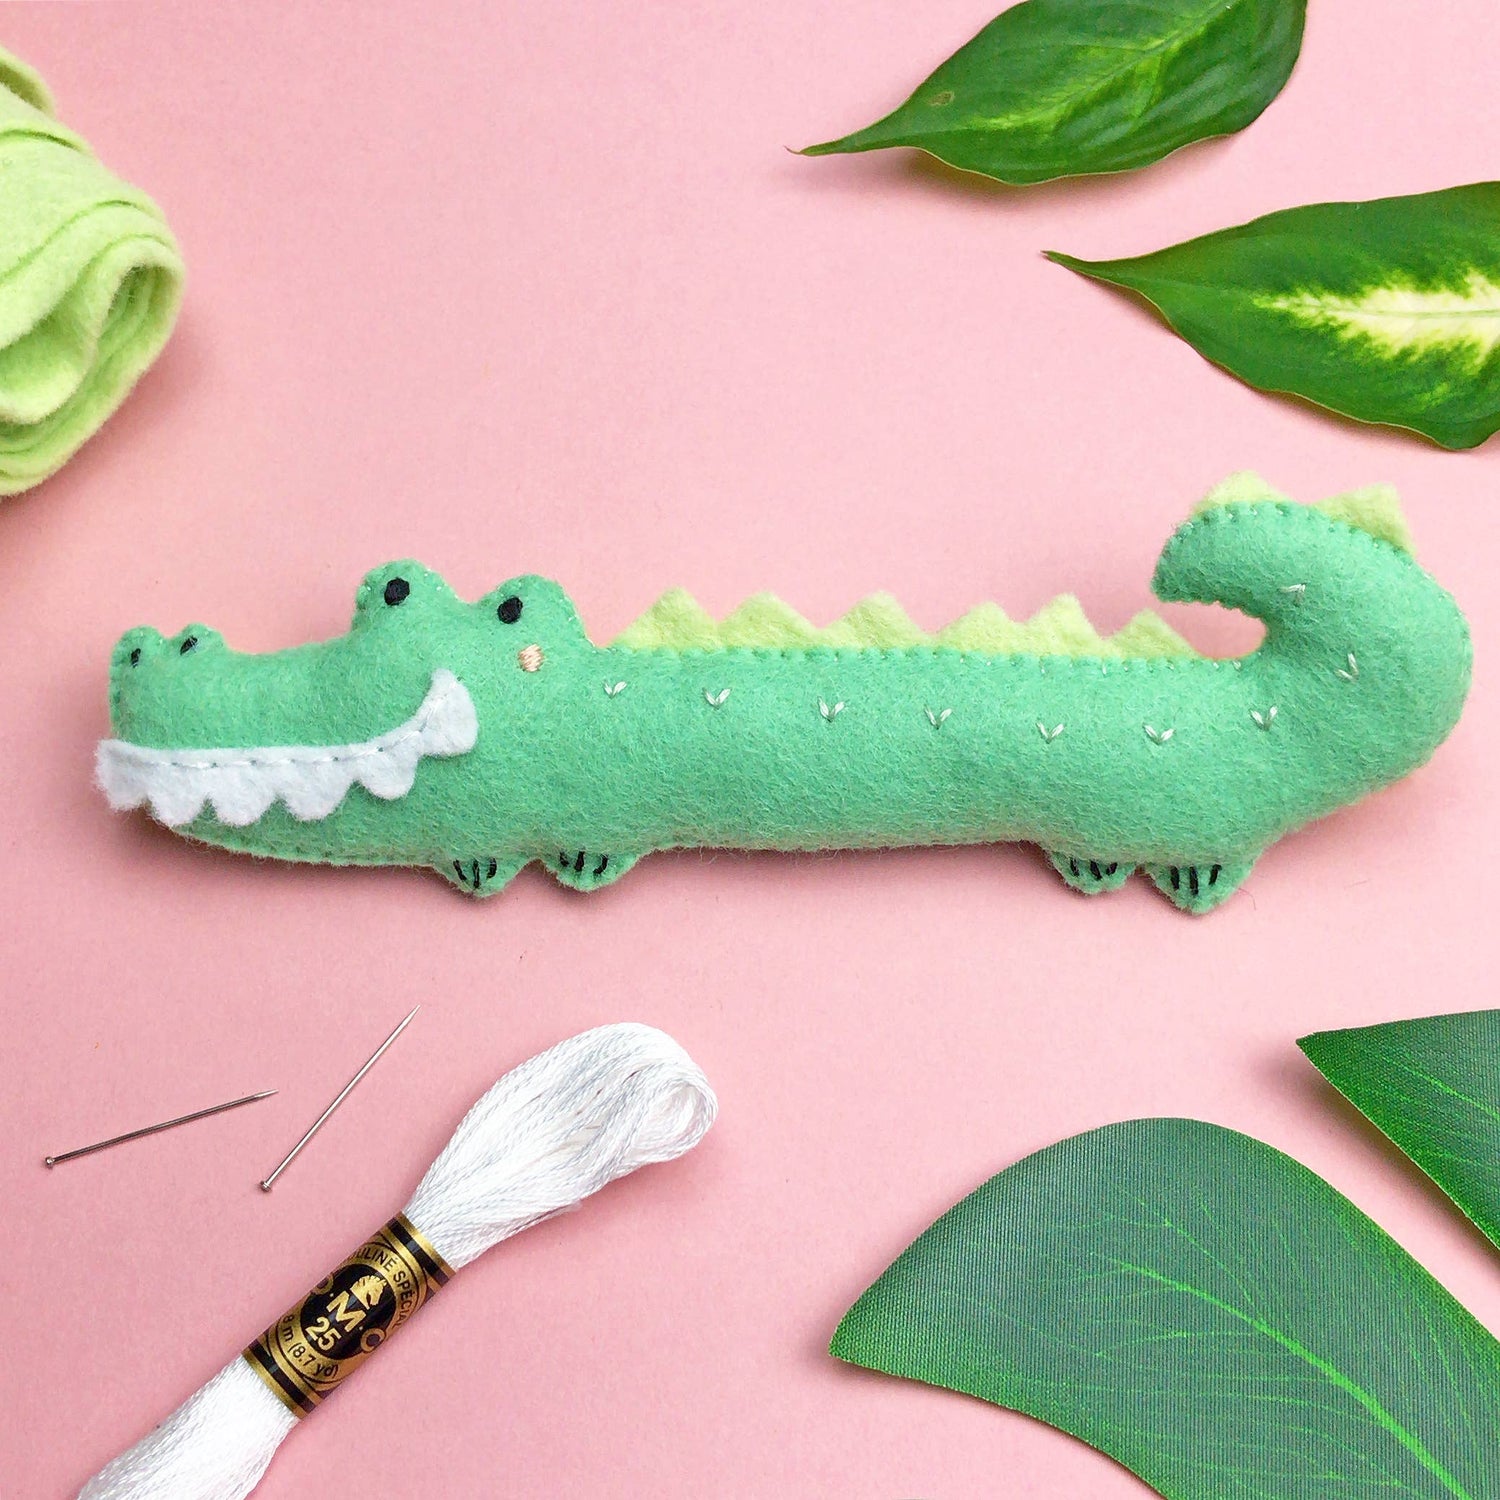 En liten grön krokodil i ekologisk ullfilt ligge spå en rosa plan yta tillsammans med gröna blad. 